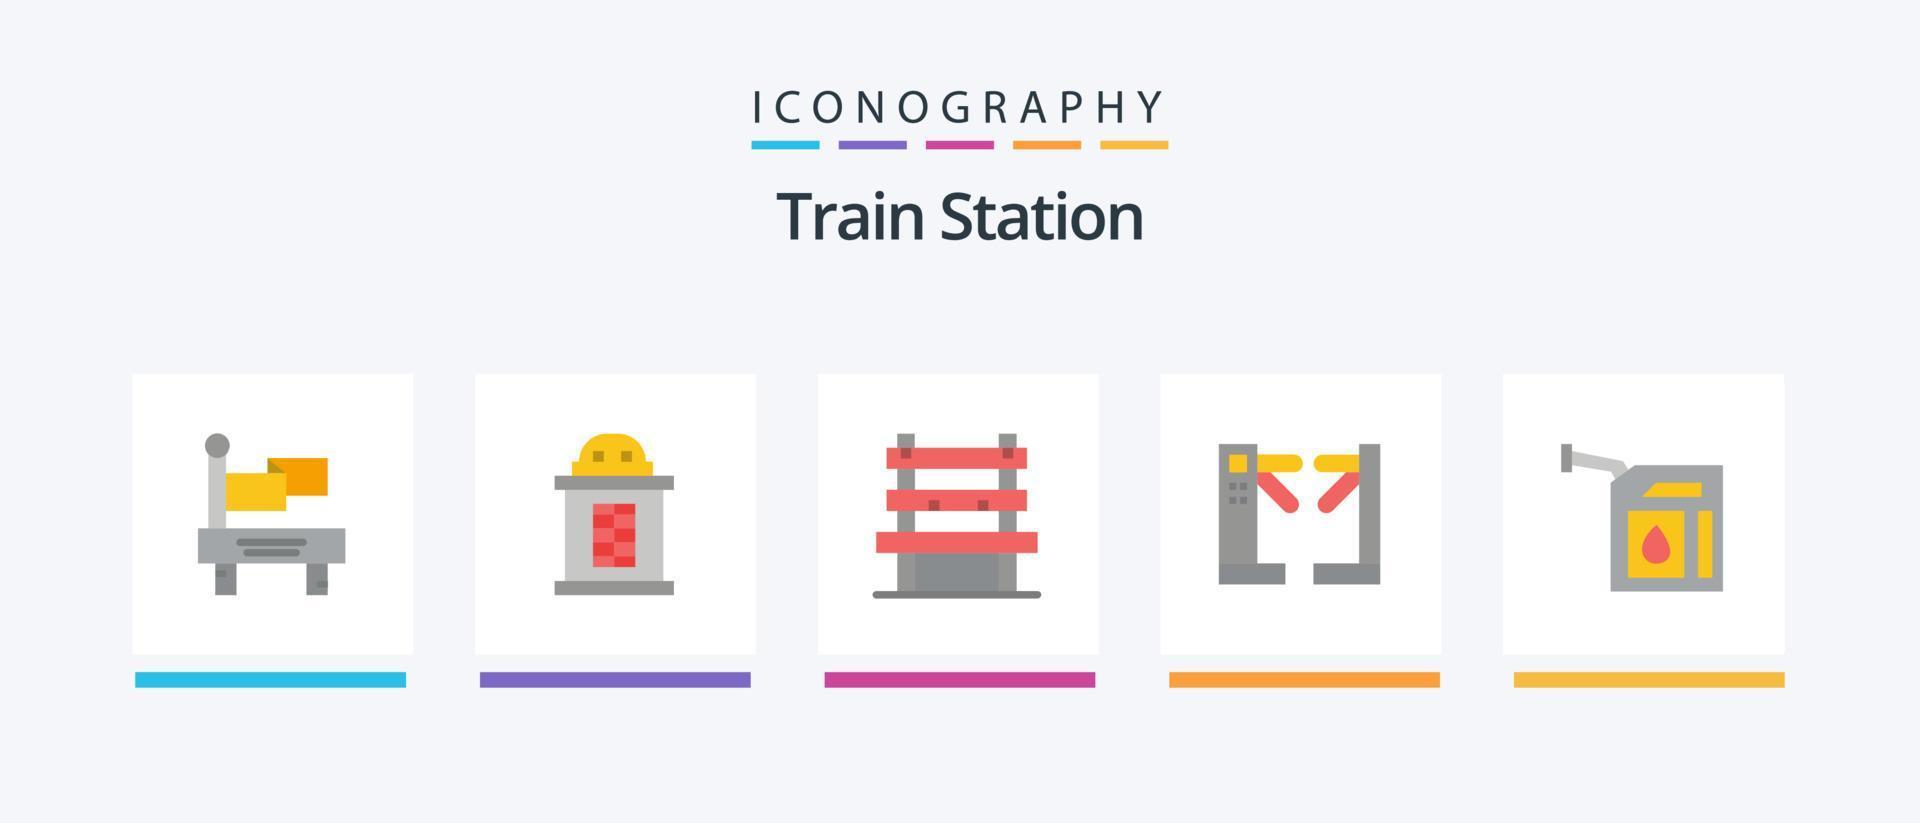 estação de trem flat 5 icon pack incluindo estação. gás. estação. carro. catracas. design de ícones criativos vetor